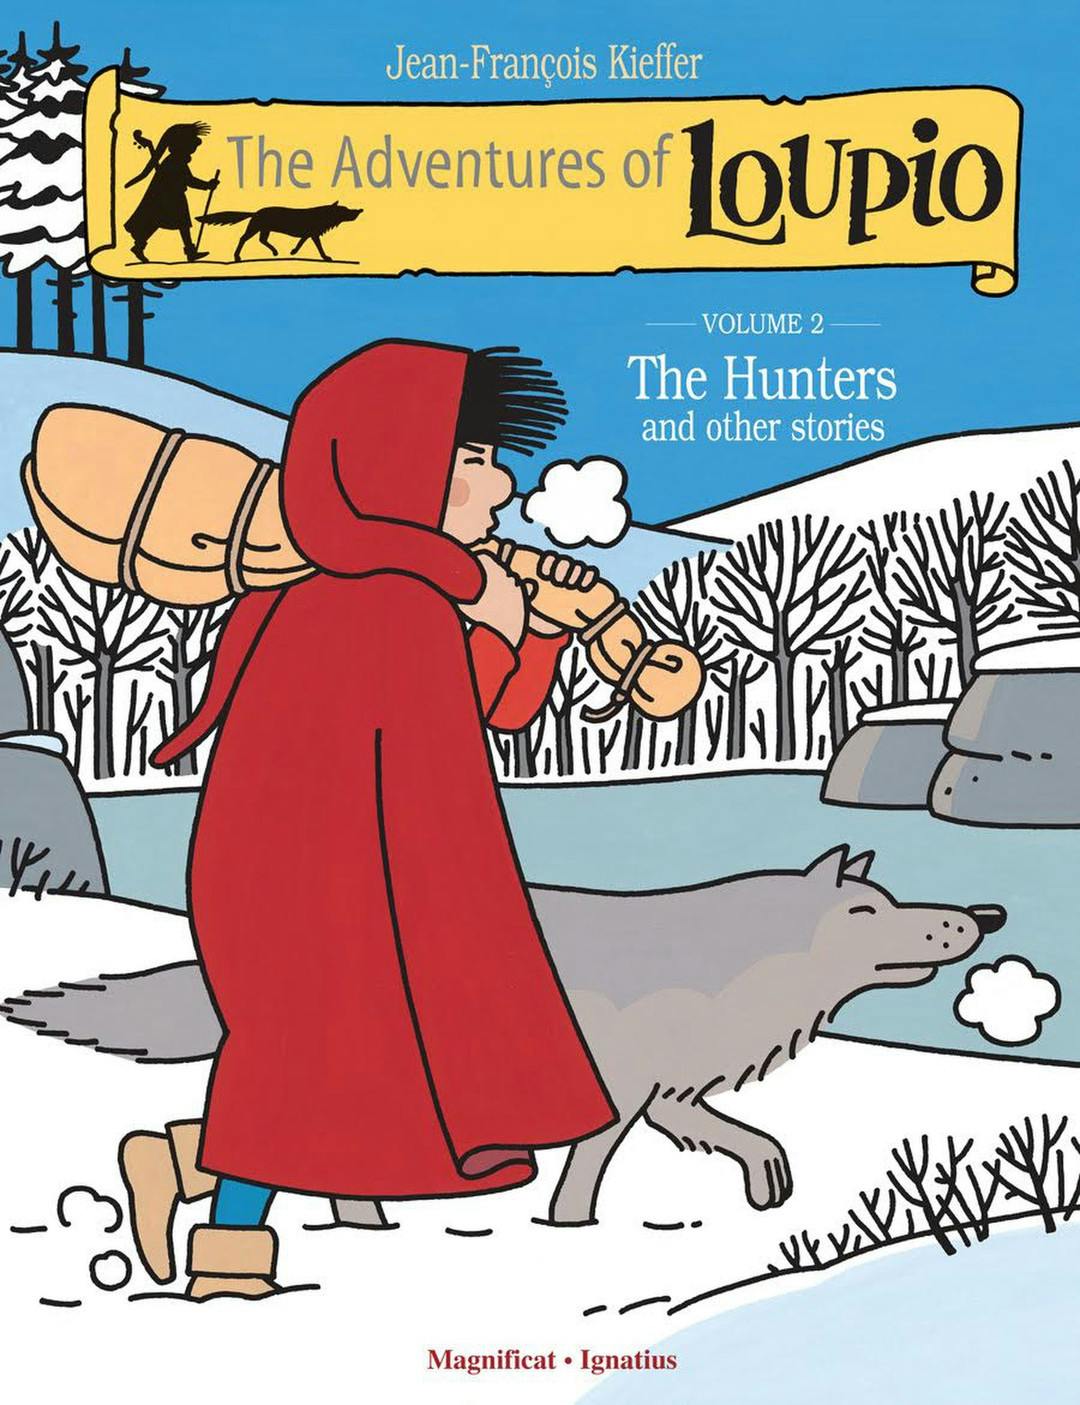 The Adventures of Loupio Volume 2